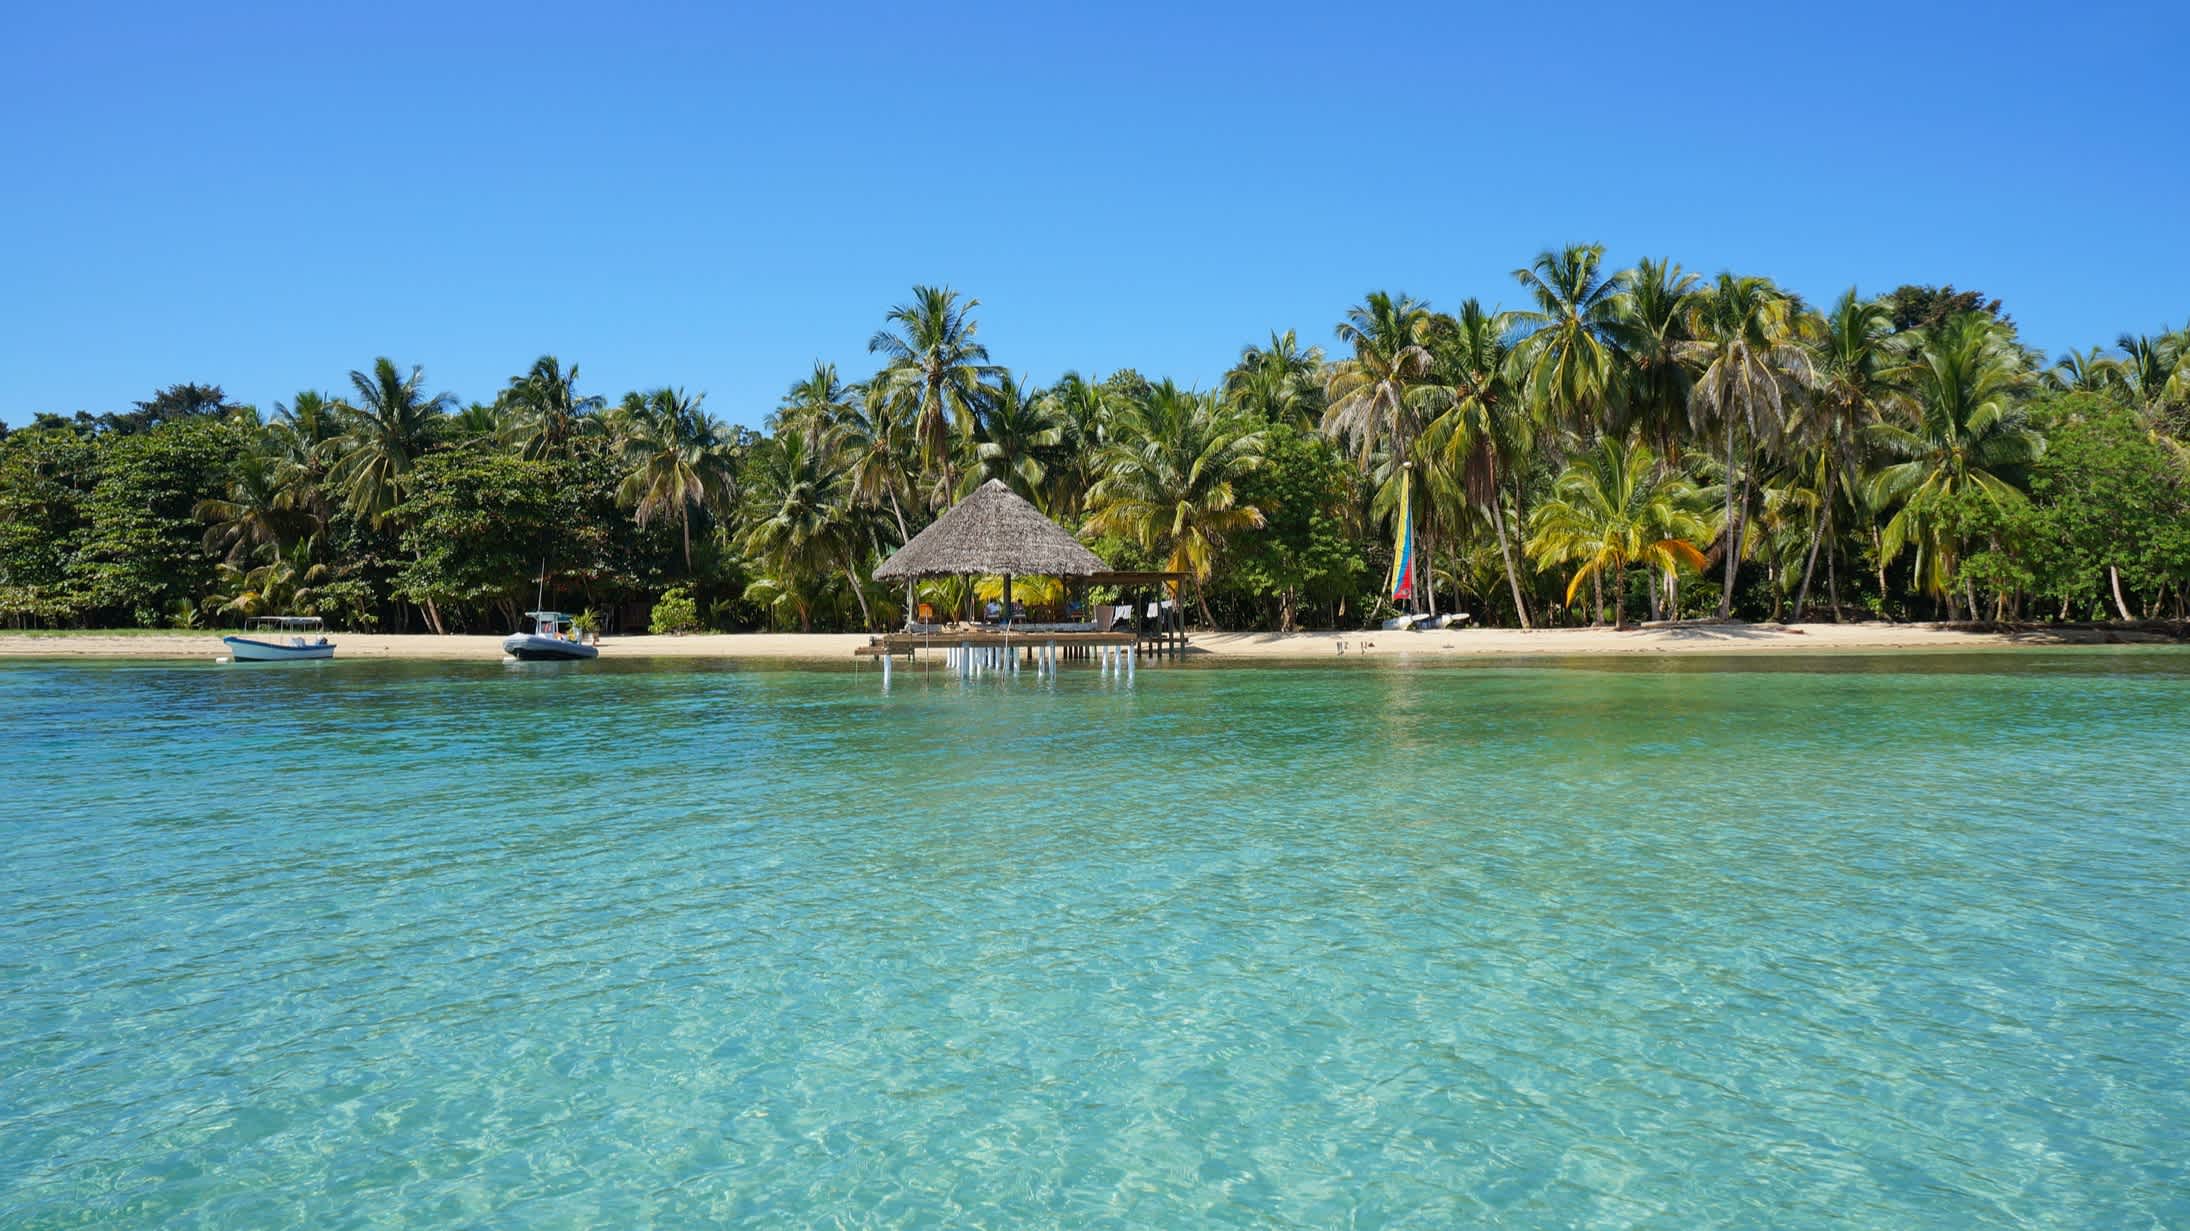 Palapa au-dessus de l'eau sur une plage bordée de cocotiers, Bocas del Toro, mer des Caraïbes, Panama